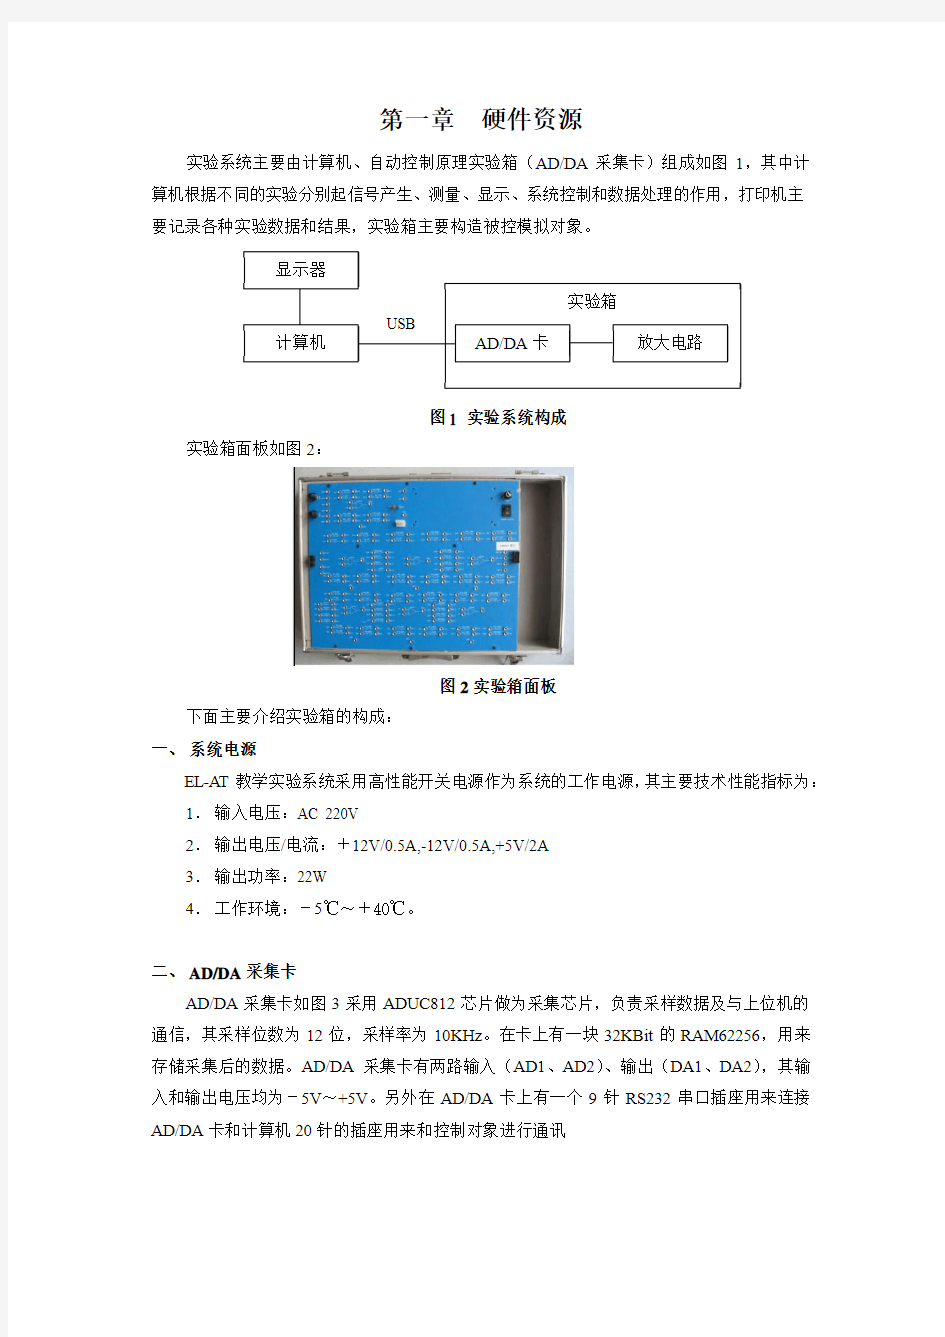 20141215-自控实验箱测试手册